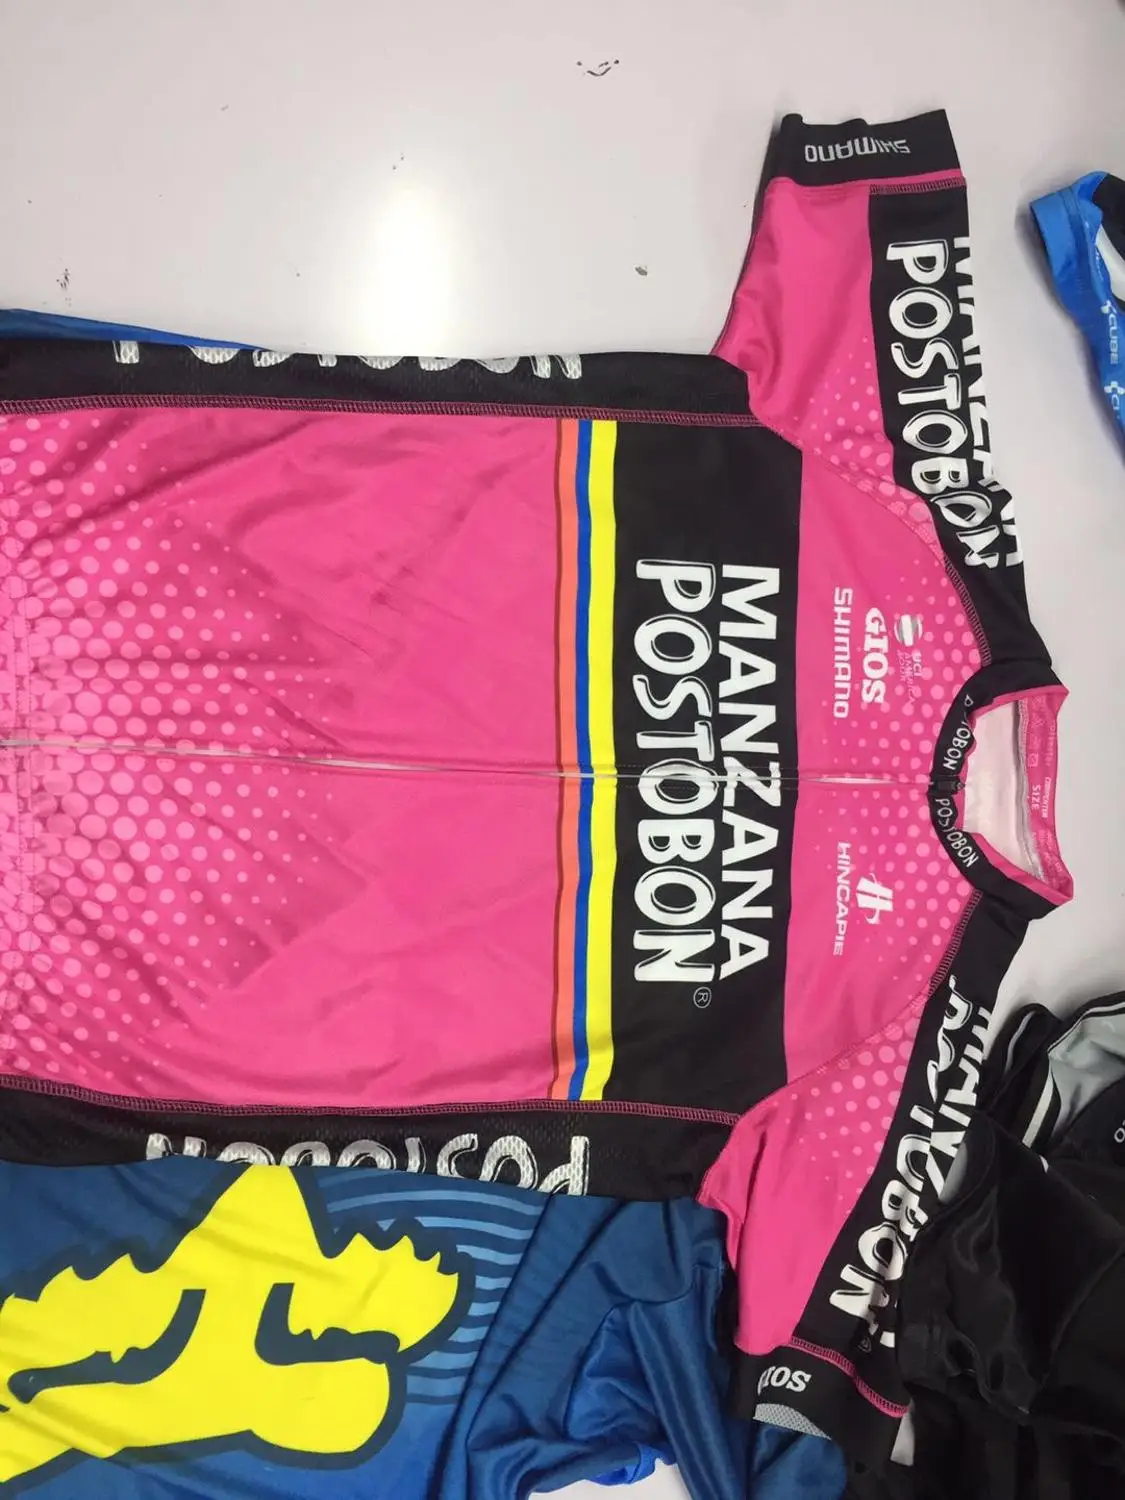 MANZANA POSTOBON PRO TEAM велосипедная майка розовая летняя быстросохнущая велосипедная одежда с коротким рукавом